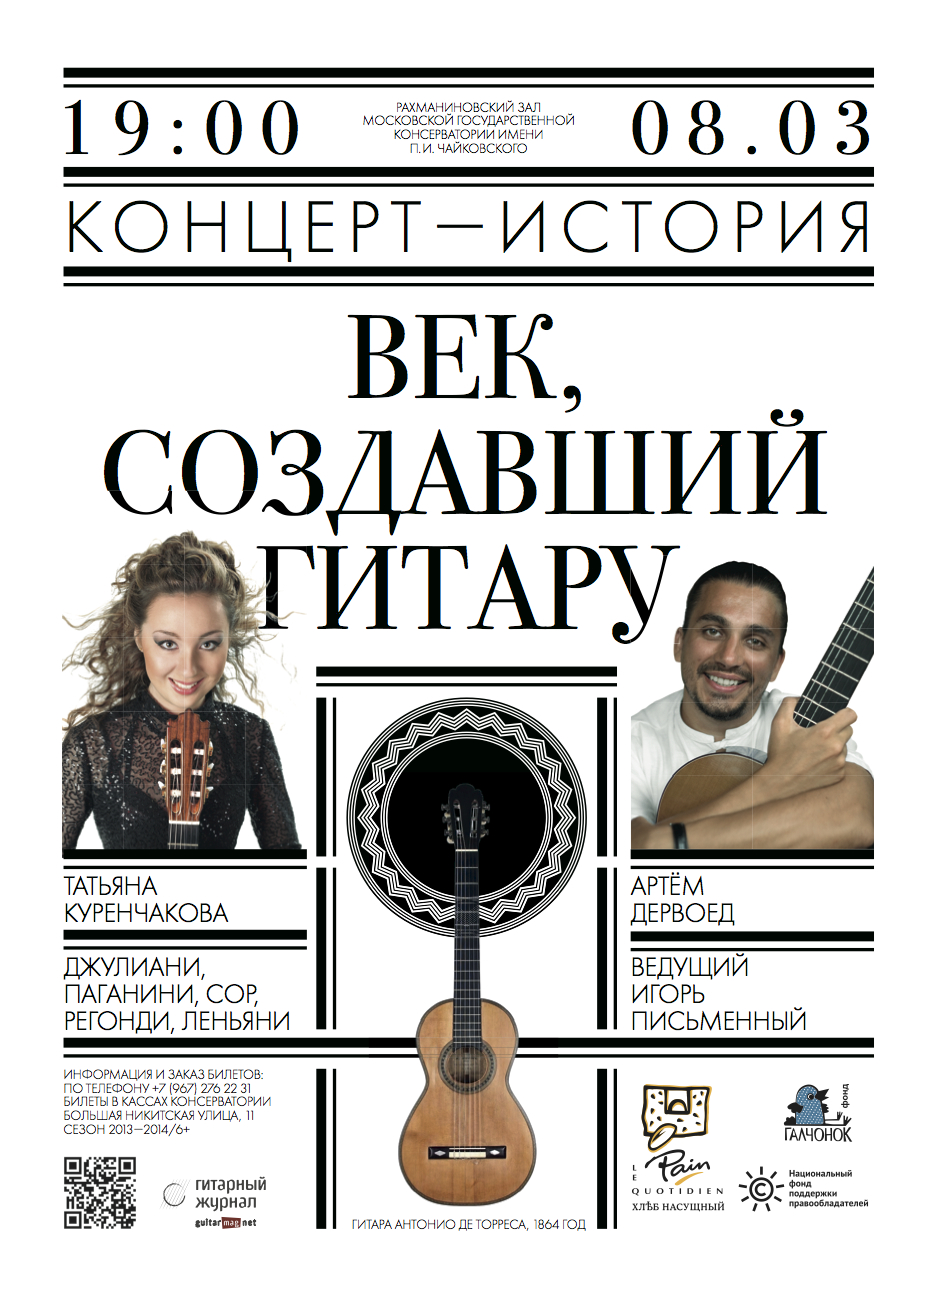 8 марта при поддержке НФПП состоится концерт «Век, создавший гитару»